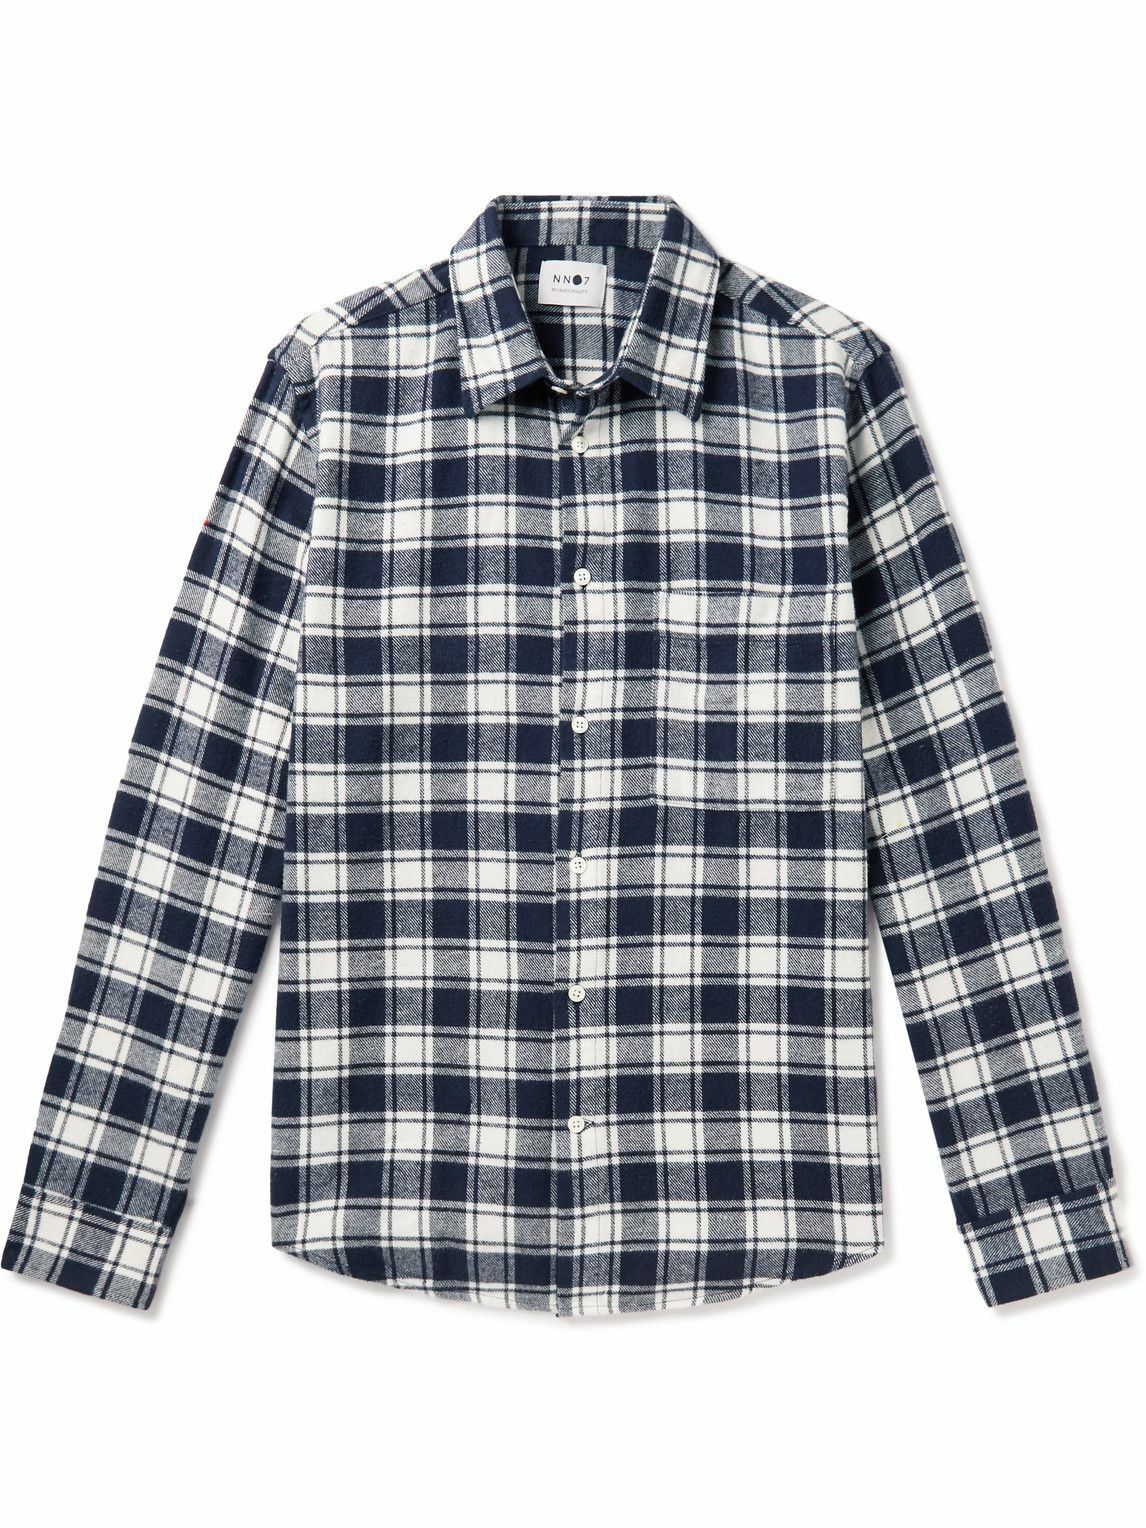 NN07 - Arne 5166 Checked Cotton-Flannel Shirt - Blue NN07